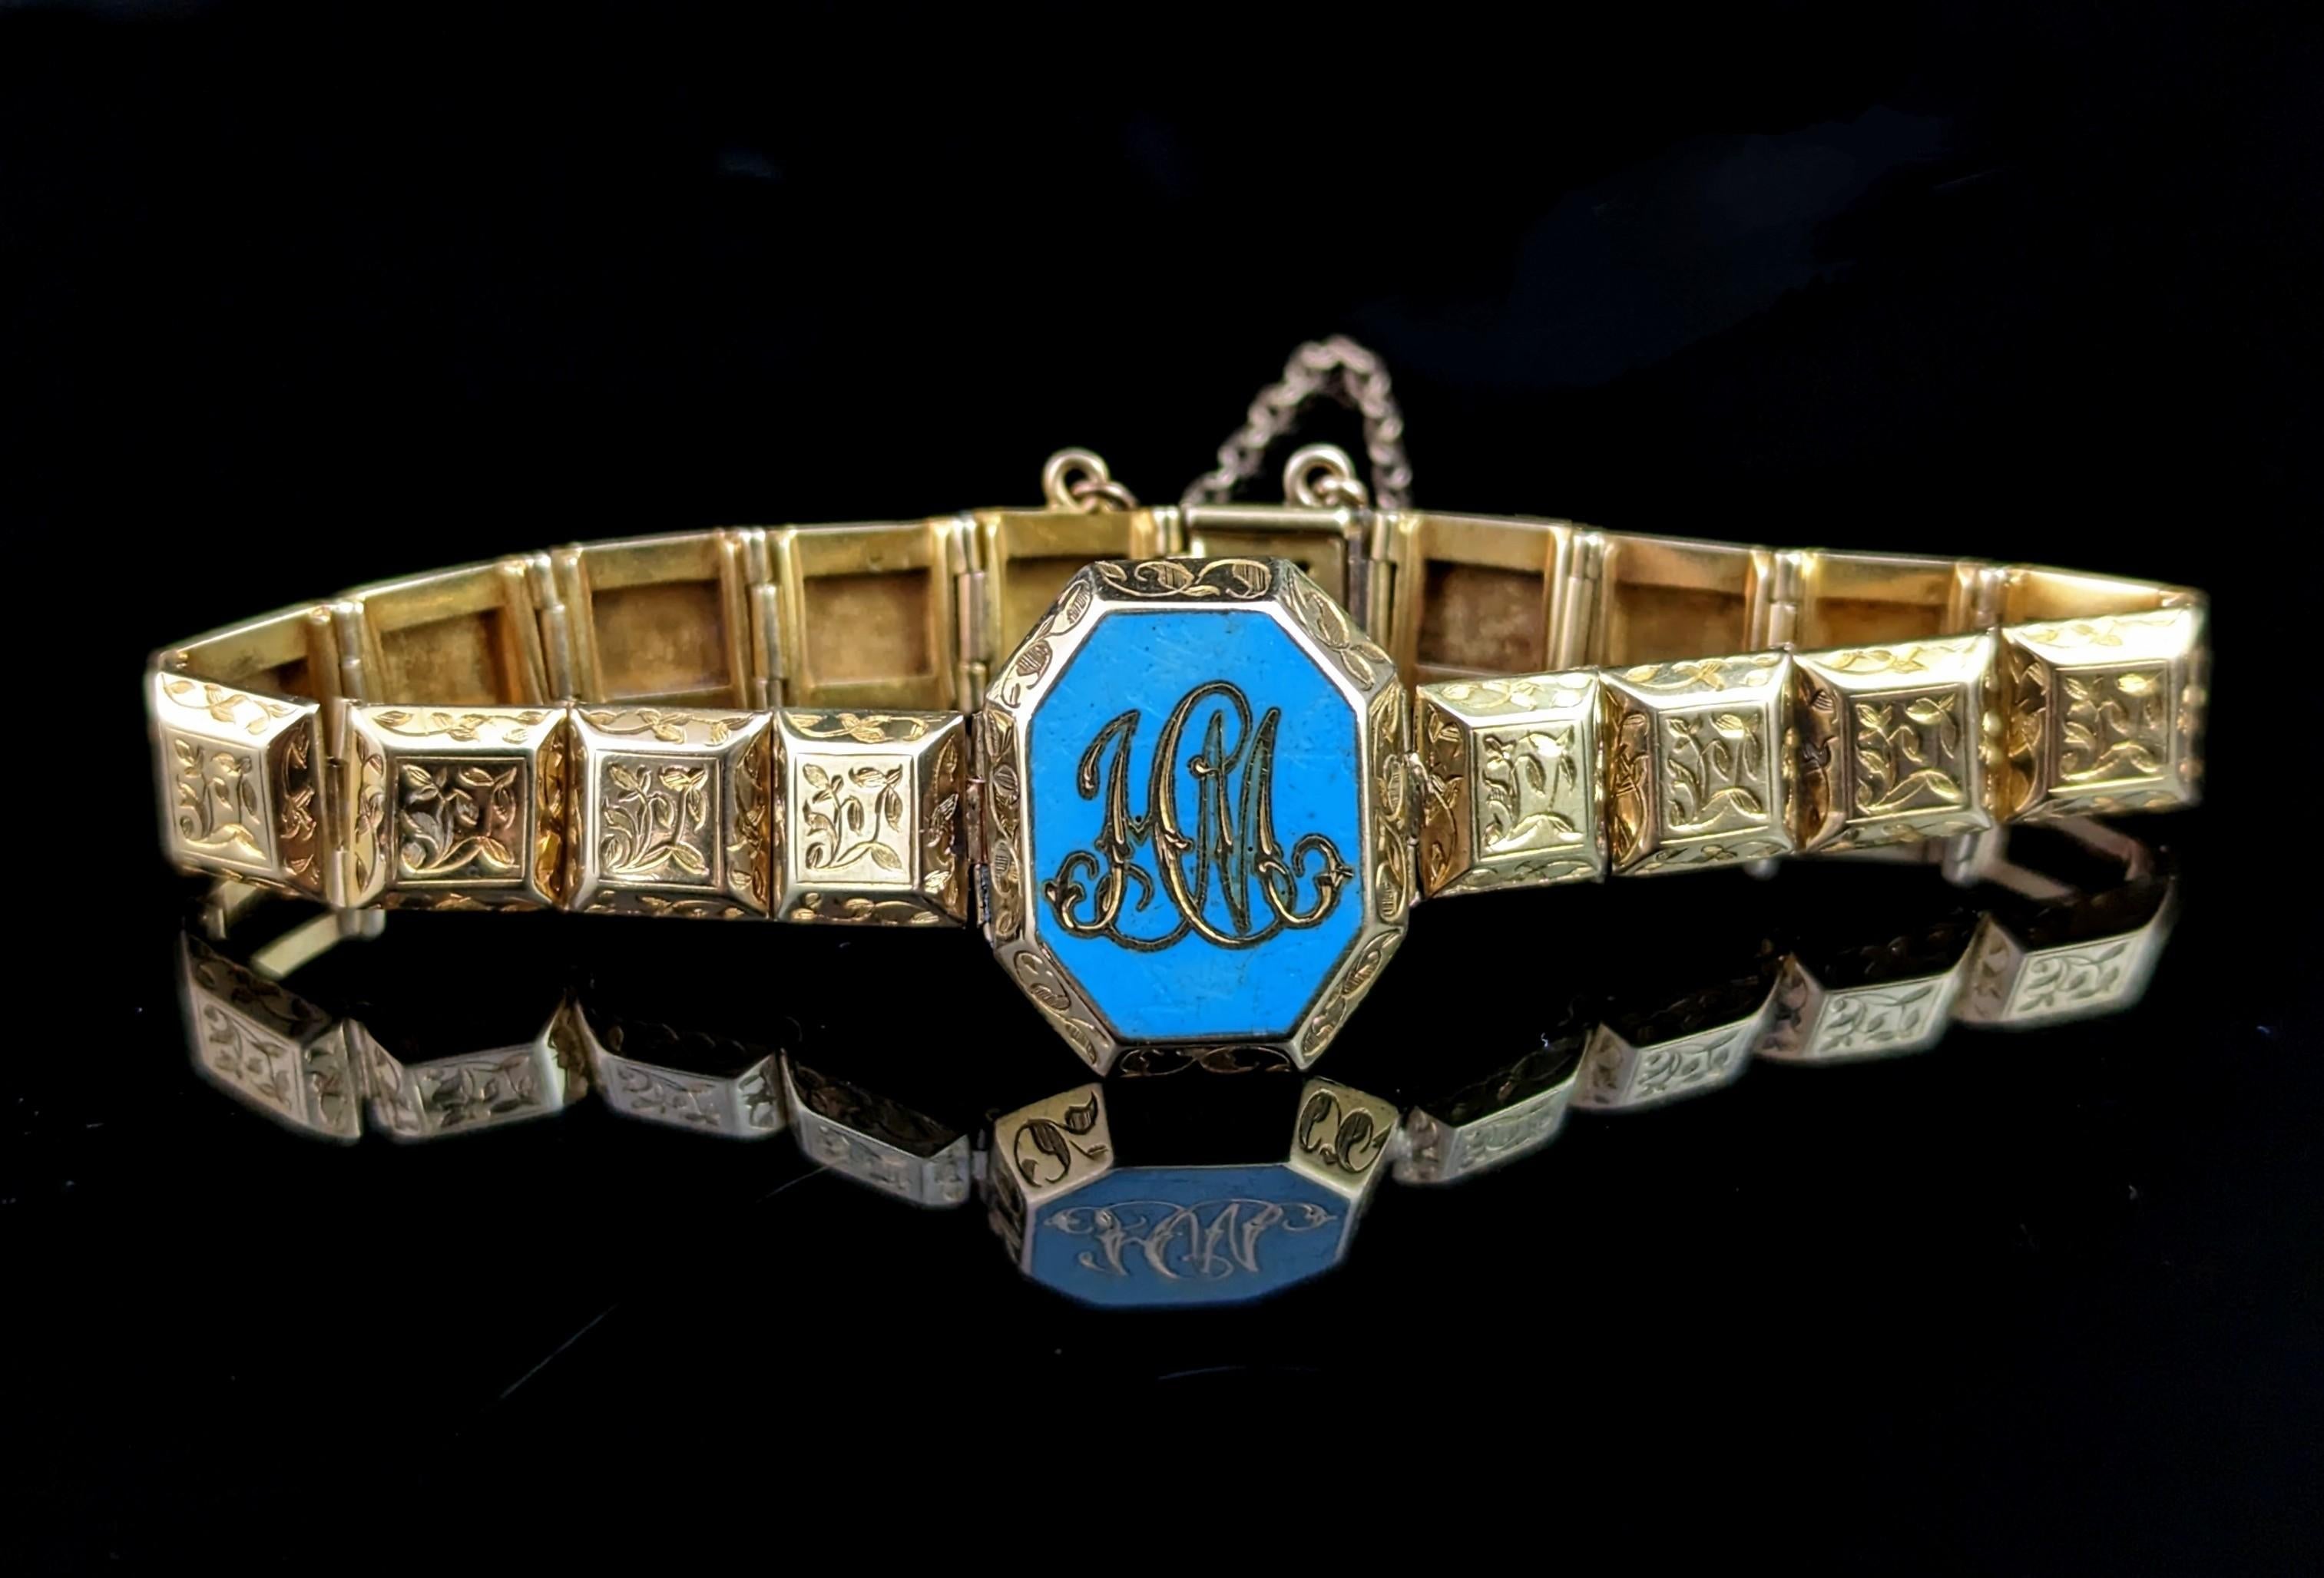 Dieses atemberaubende Armband aus antikem 18-karätigem Gold ist zart und kühn zugleich. Es fängt die erhabene Handwerkskunst des viktorianischen Trauerschmucks ein, ohne sofort als Trauerschmuck erkennbar zu sein.

Dieses seltene und ungewöhnliche